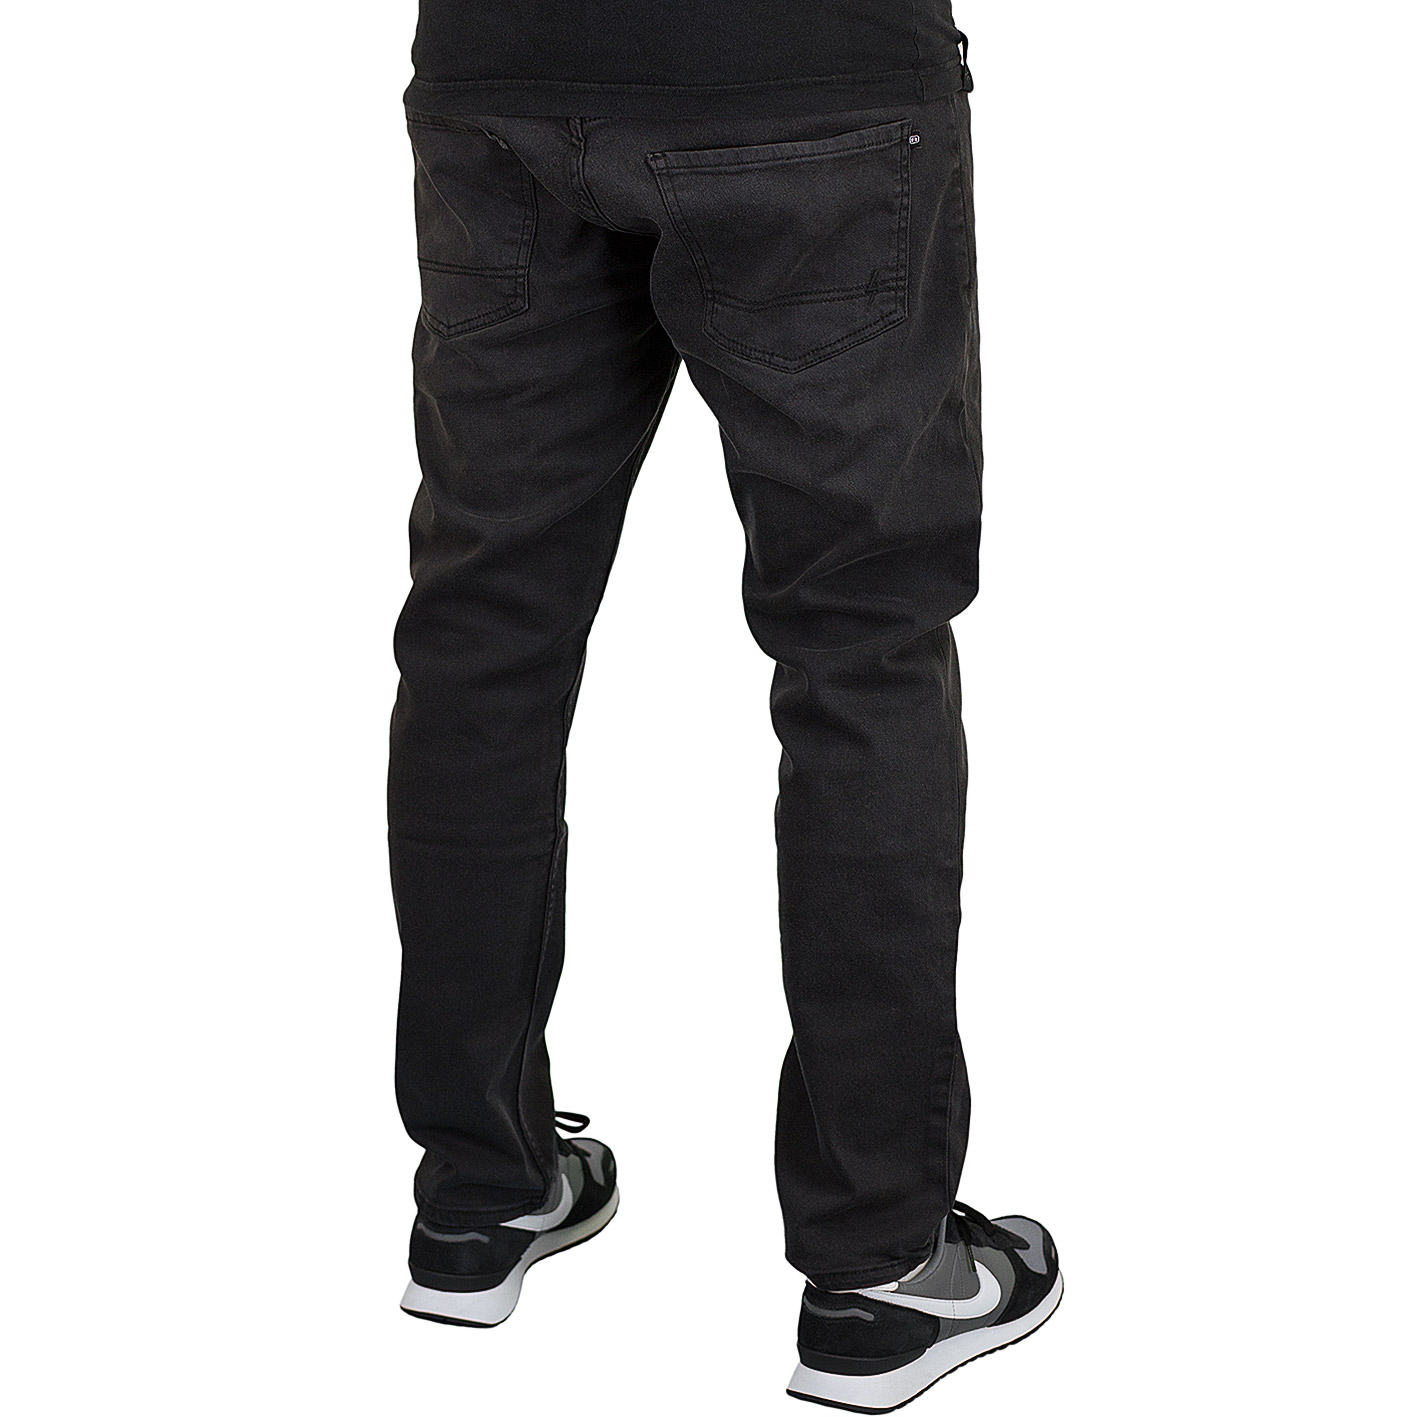 ☆ Reell Jeans Nova 2 faded schwarz - hier bestellen!